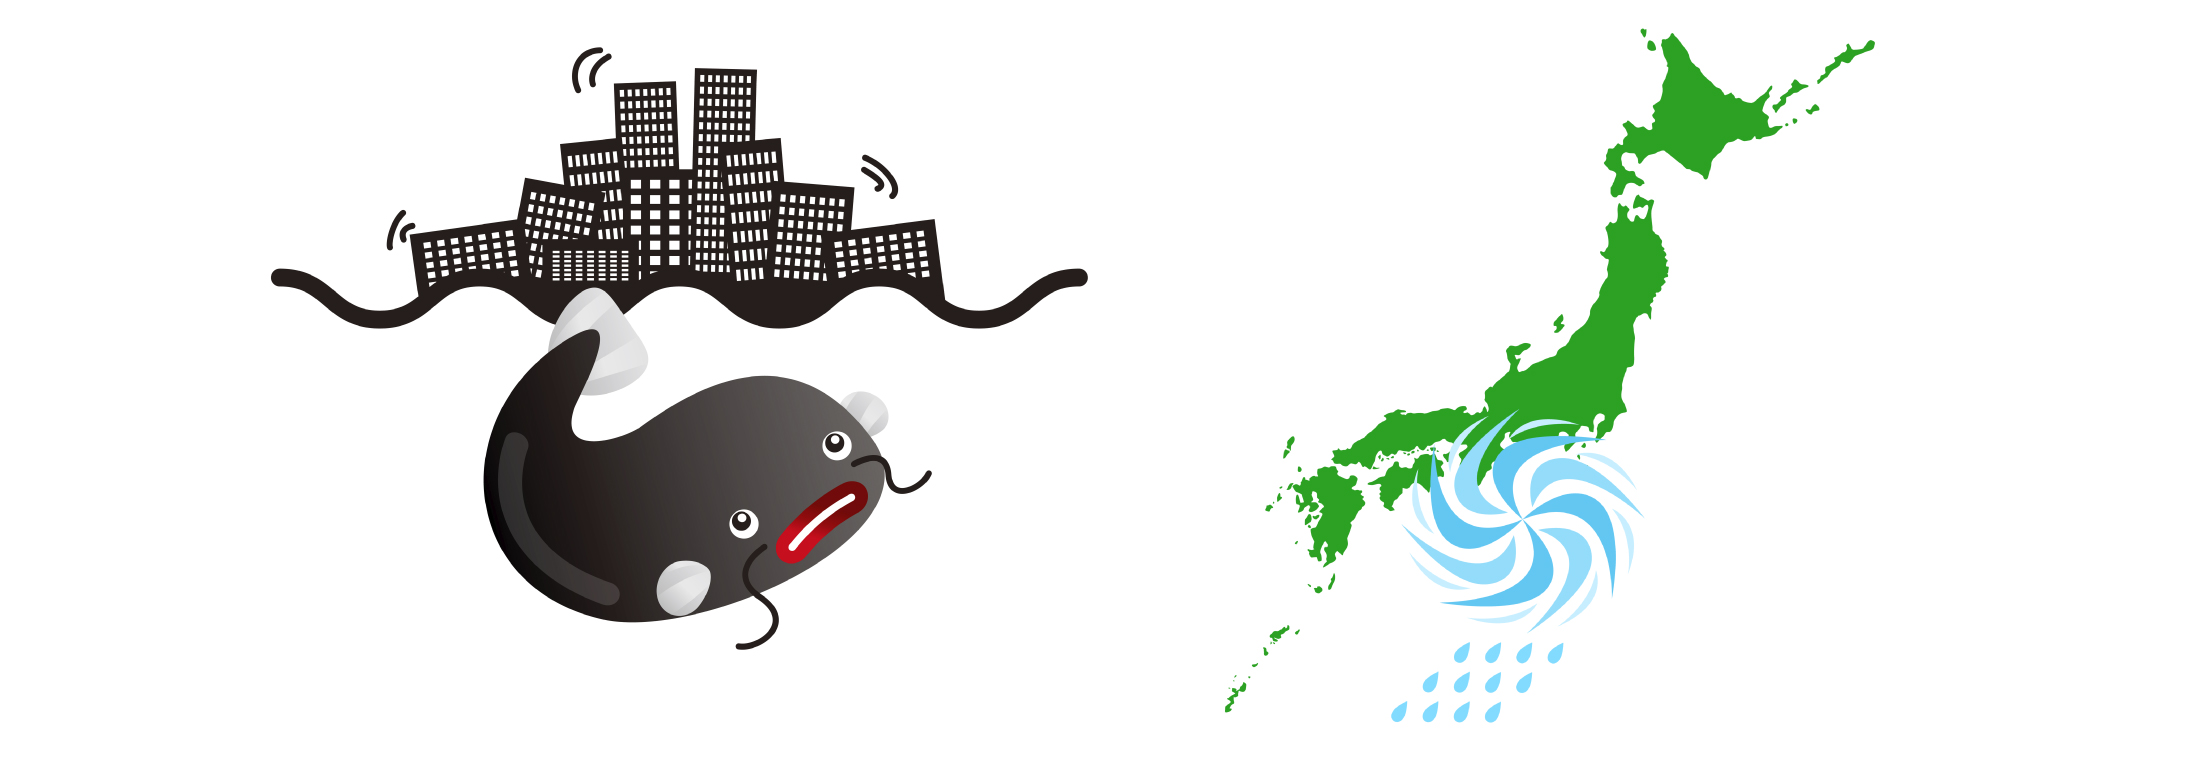 地震・台風等の災害大国日本